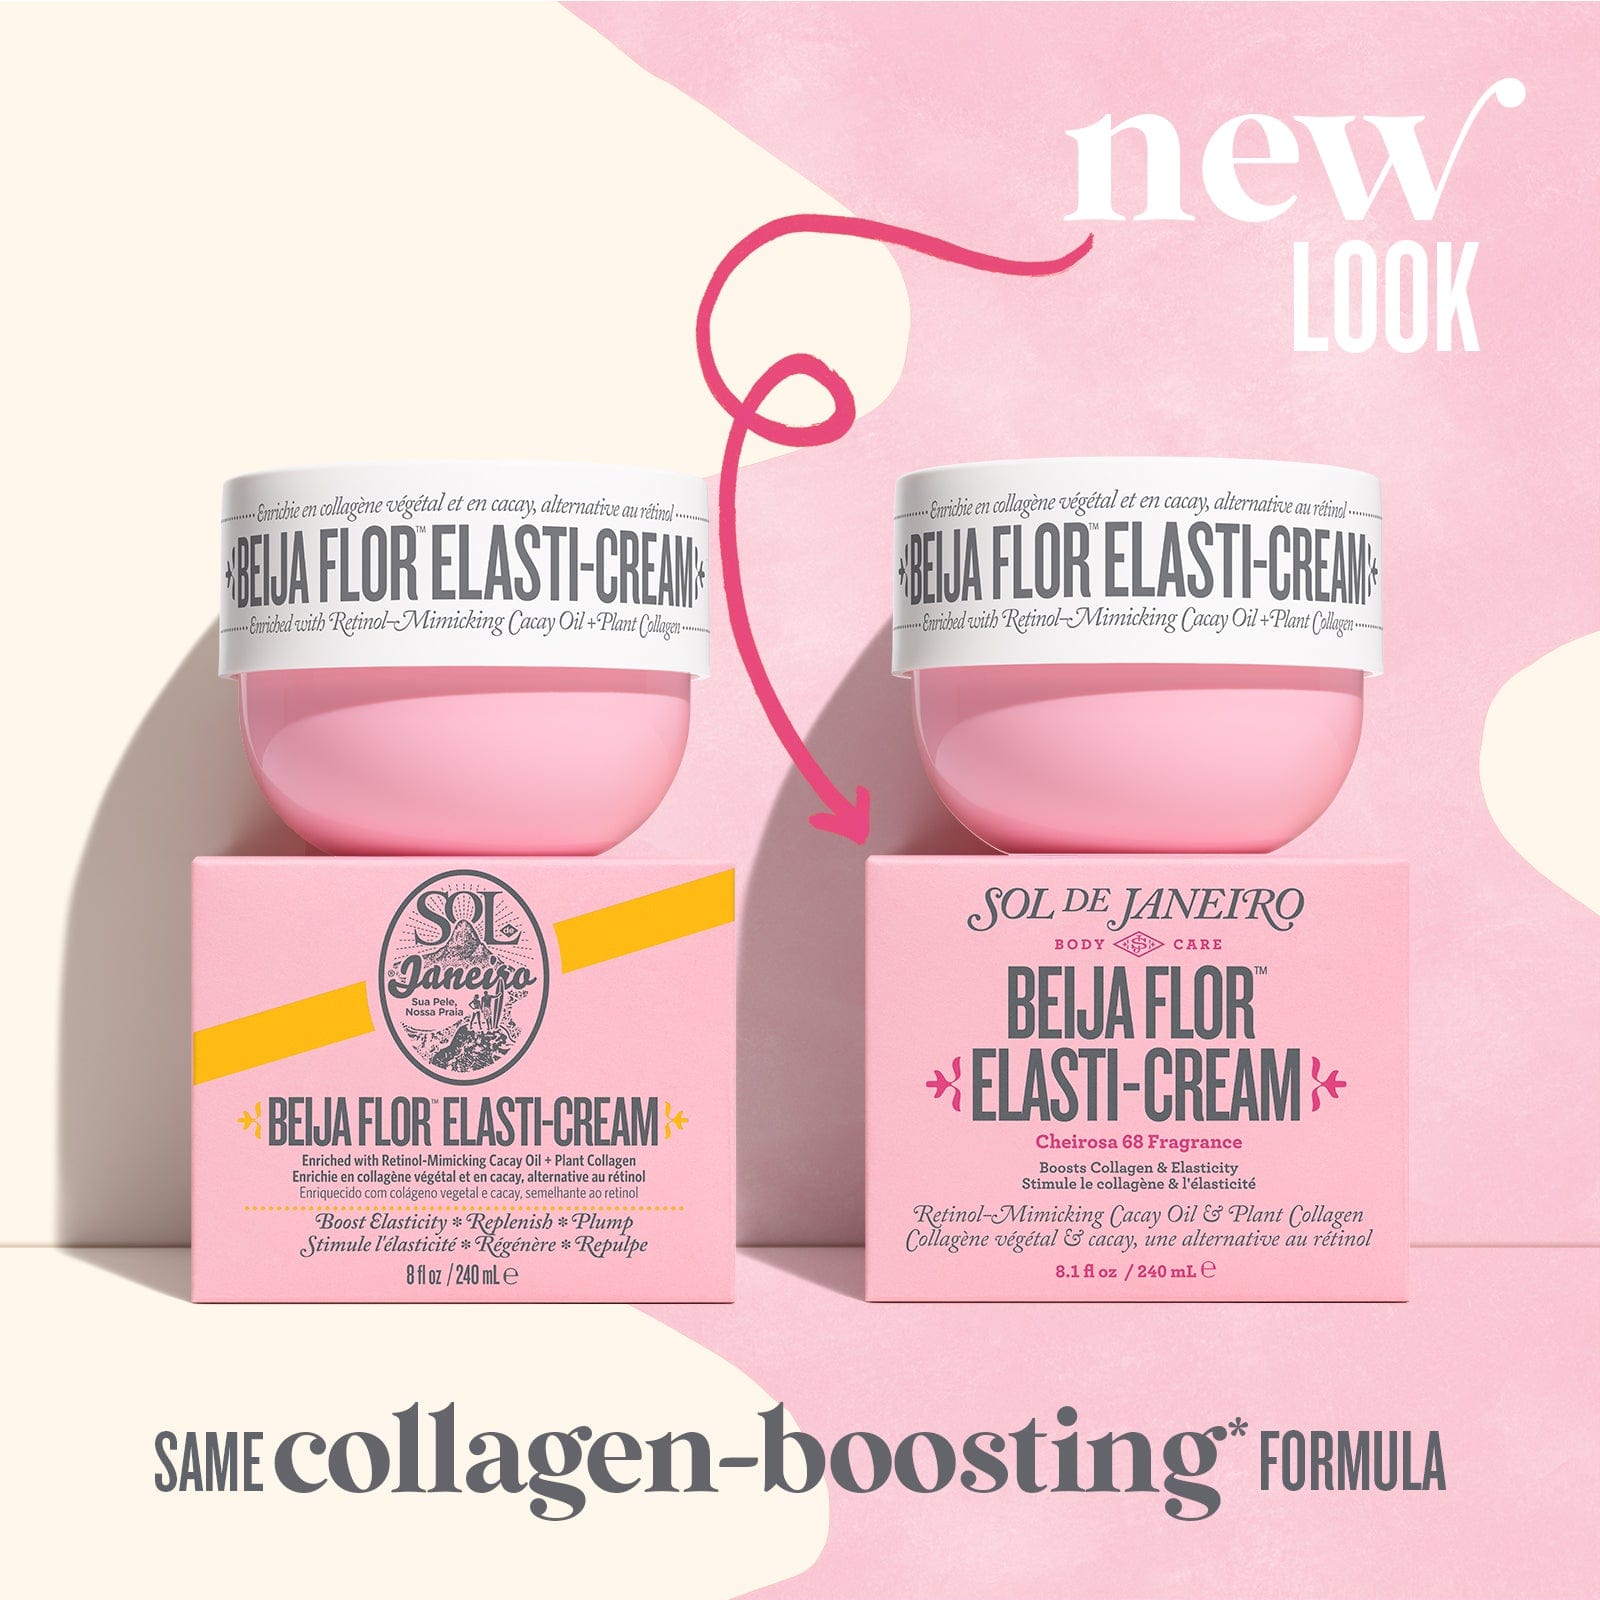 New Look - Same collagen-boosting* formula